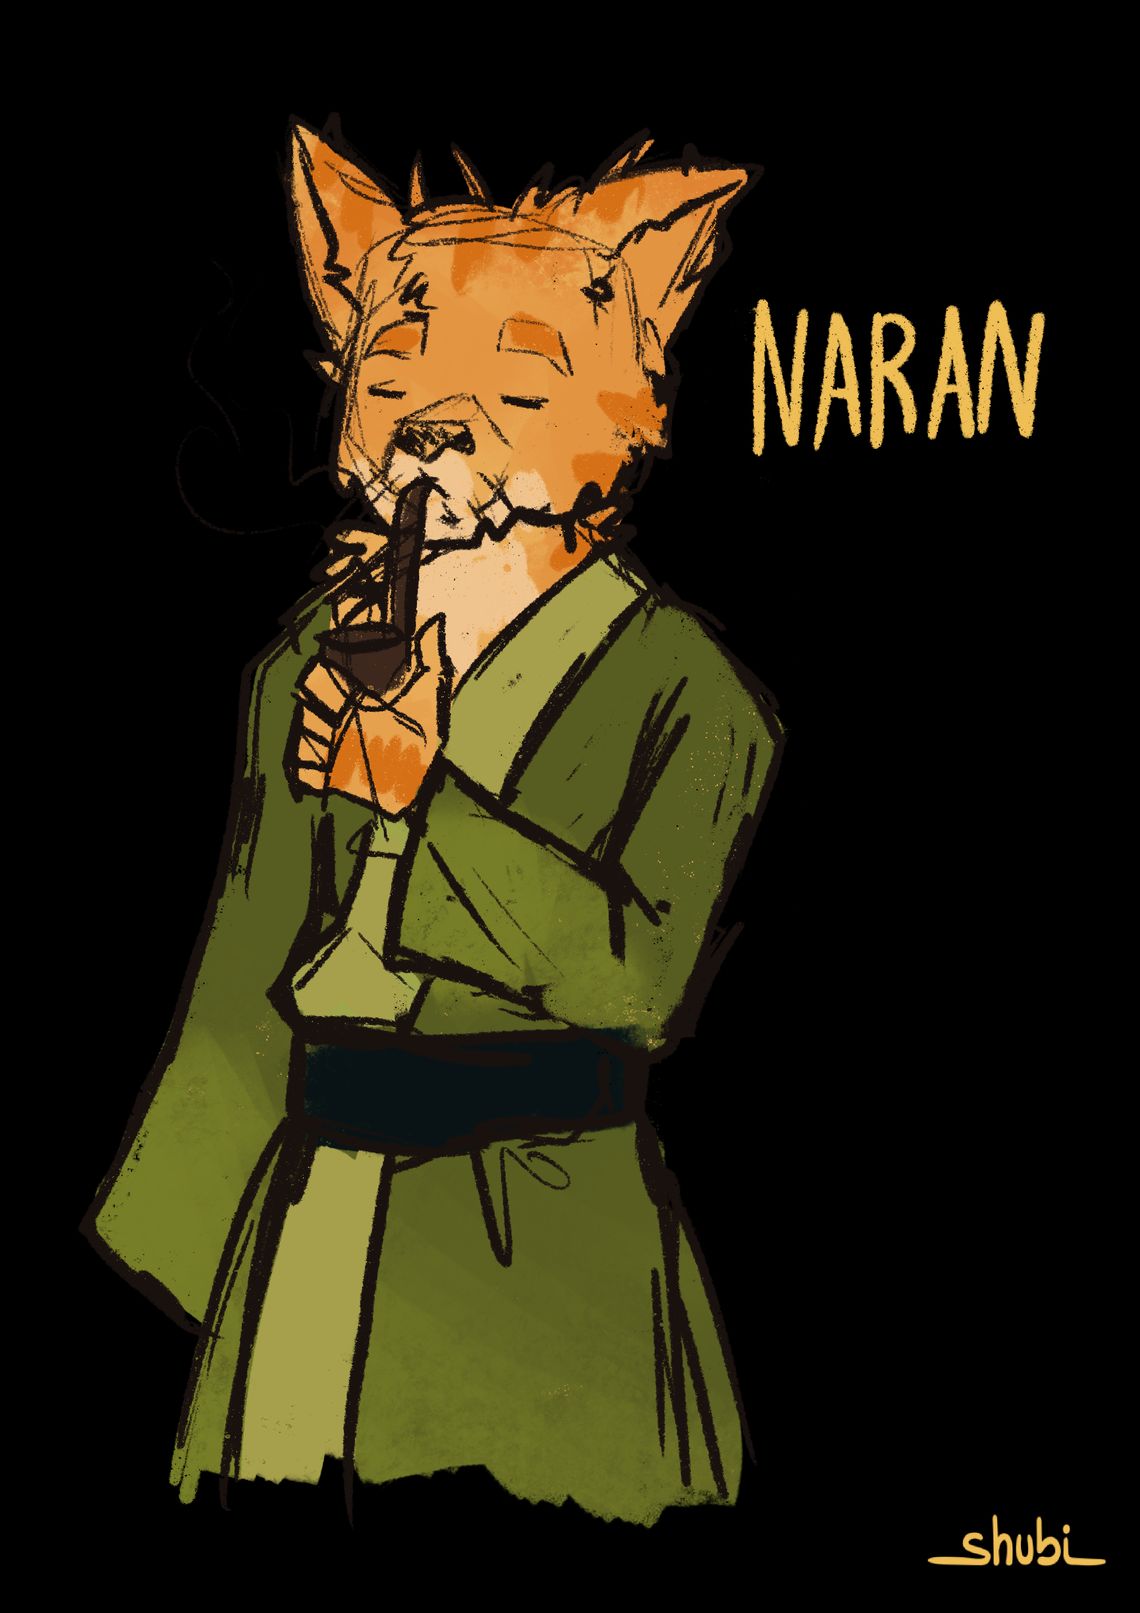 Naran